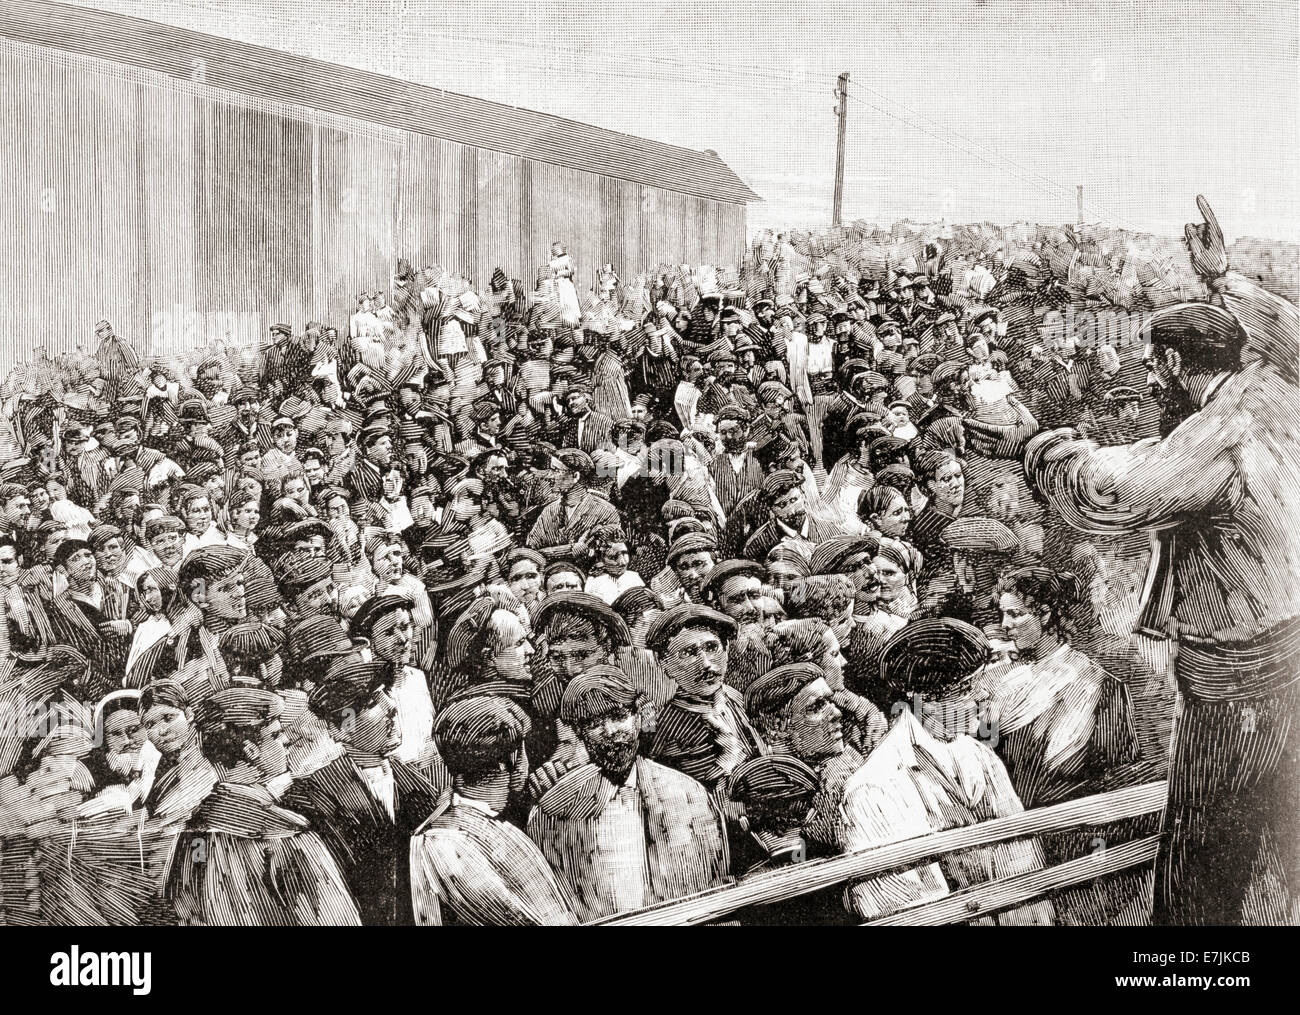 The Spanish miner's strike of 1892 in Bilbao, Spain. Stock Photo